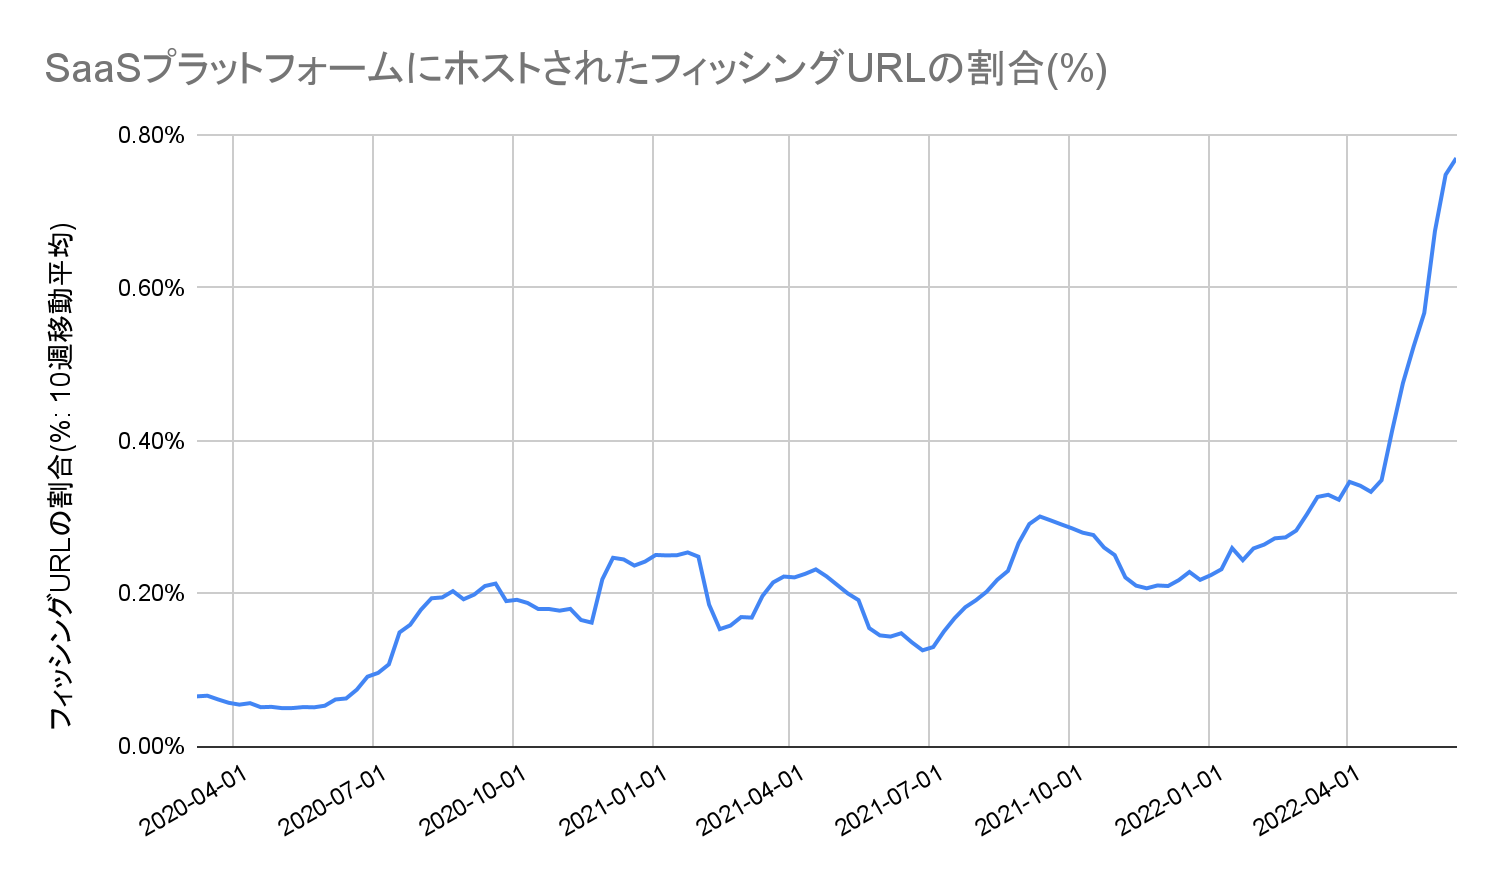 SaaSプラットフォームでホストされているフィッシングURLの割合。このグラフは、2020年4月～2022年4月の10週移動平均でのフィッシングURLの割合を示したもので、期間の最後に著しく急増していることがわかります。 